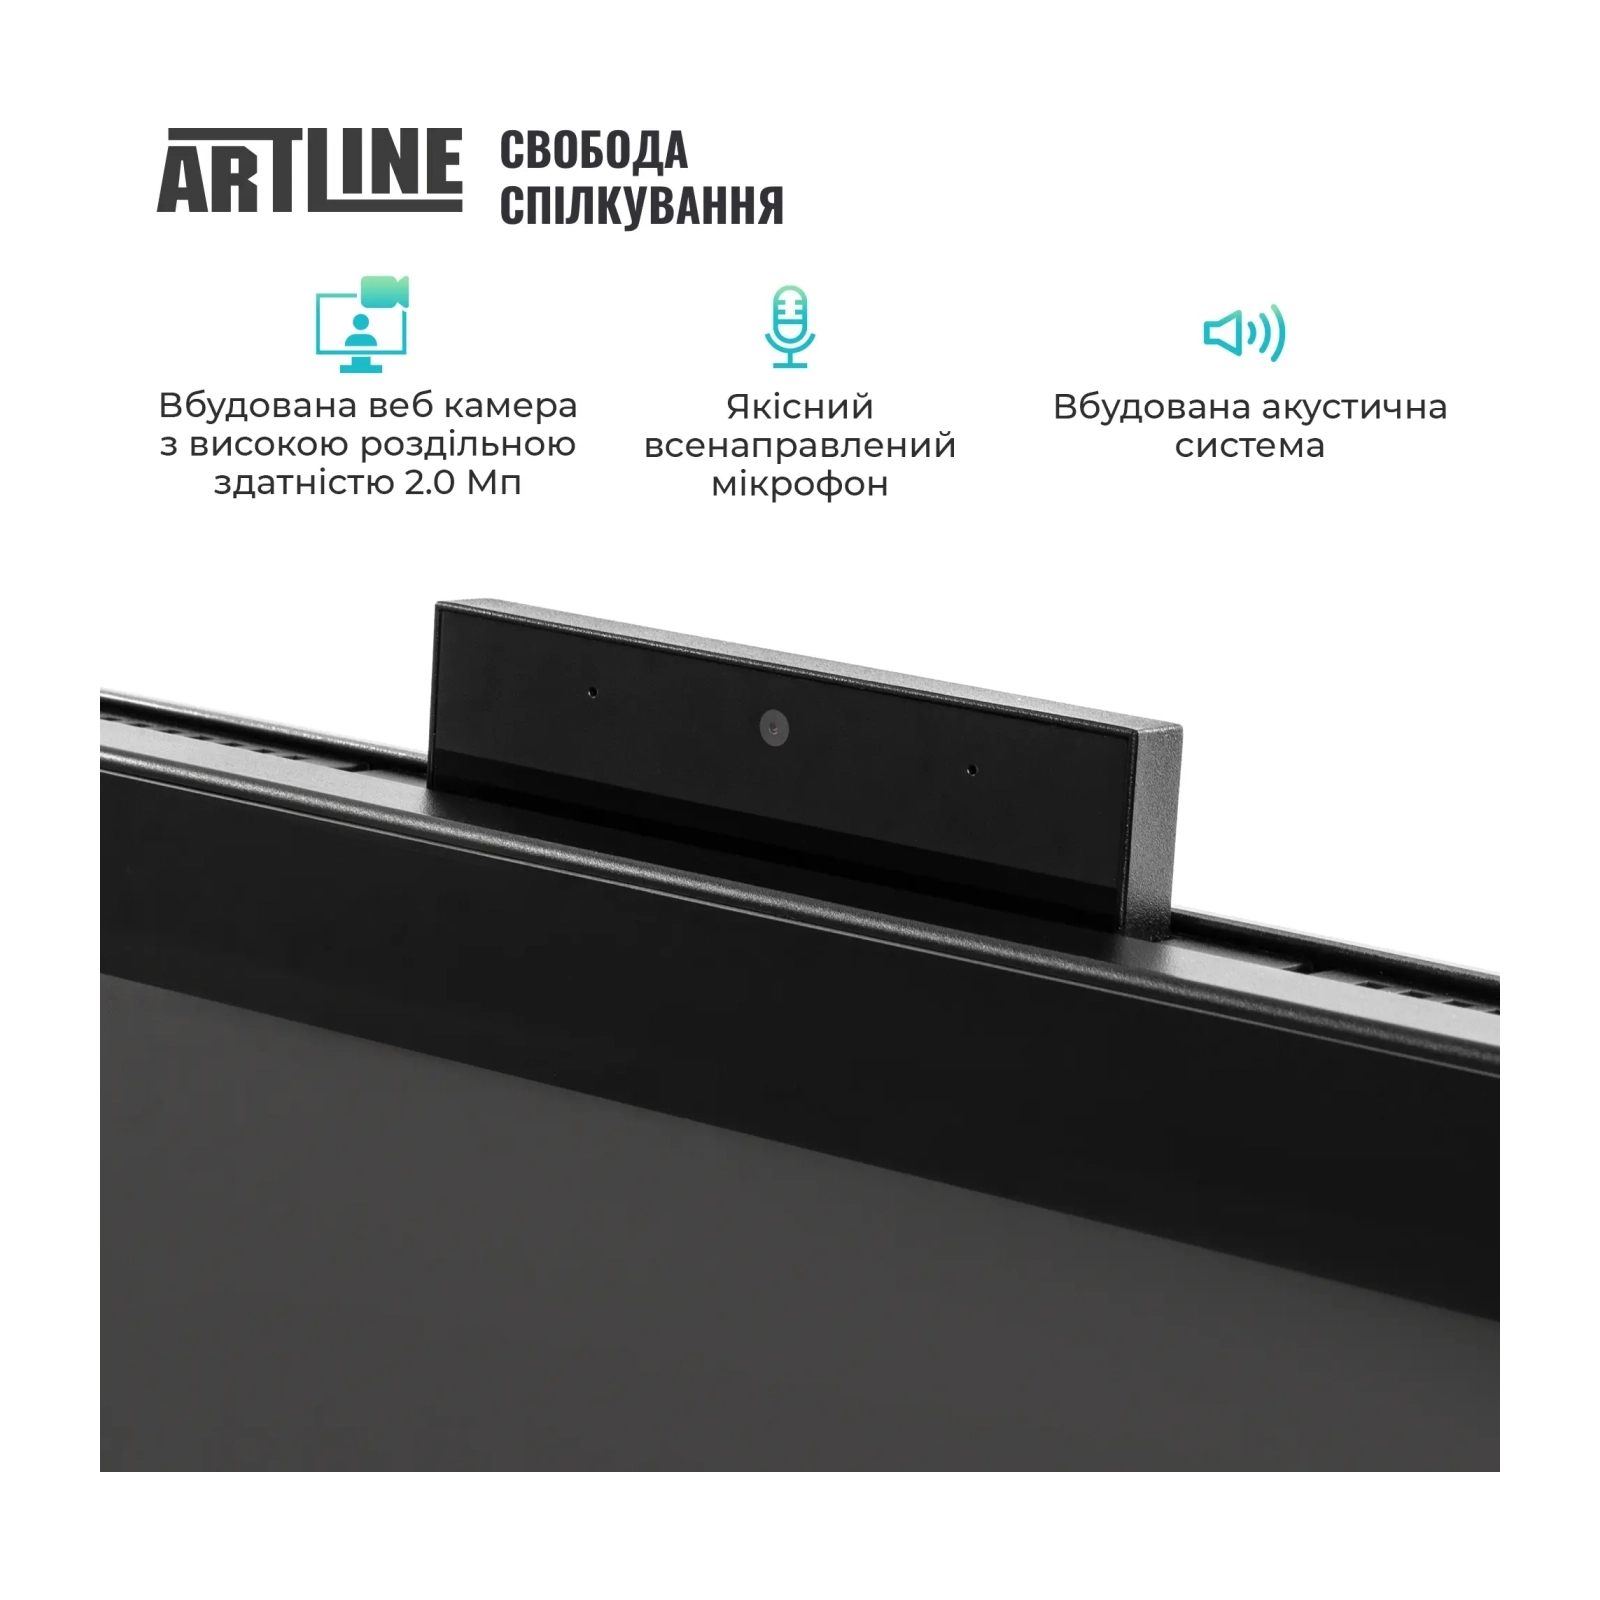 Компьютер Artline Business GT41 (GT41v01) изображение 5